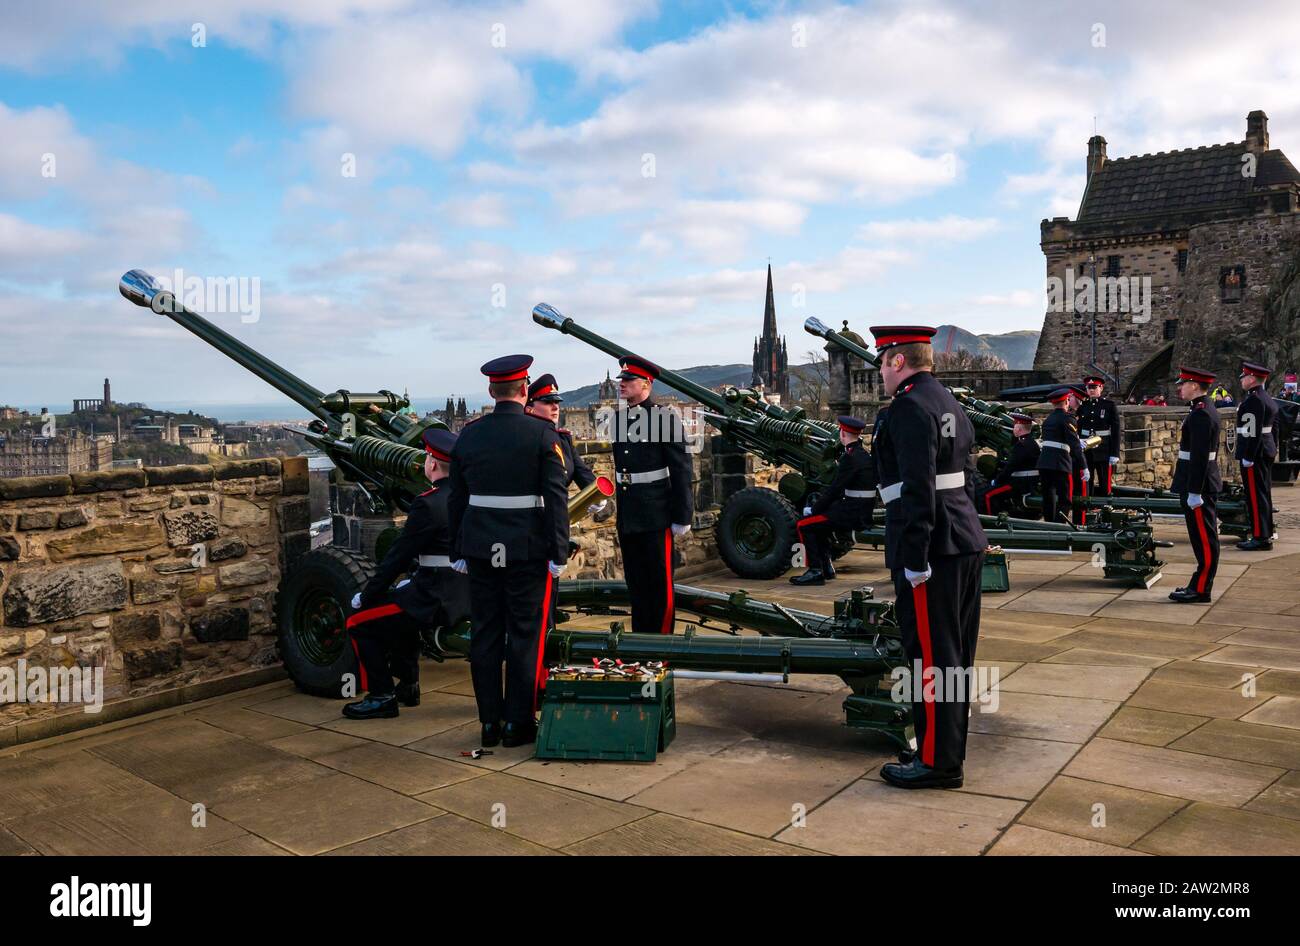 Edinburgh Castle, Edinburgh, Scotland, Regno Unito. 06th Feb, 2020. 21 Gun Salute: Il saluto del 26 Reggimento Royal artiglieria sul Monte dei Mulini segna l'occasione dell'adesione della Regina HM al trono il 6th febbraio 1952, 68 anni fa, il reggimento di artiglieria si trova all'attenzione Foto Stock